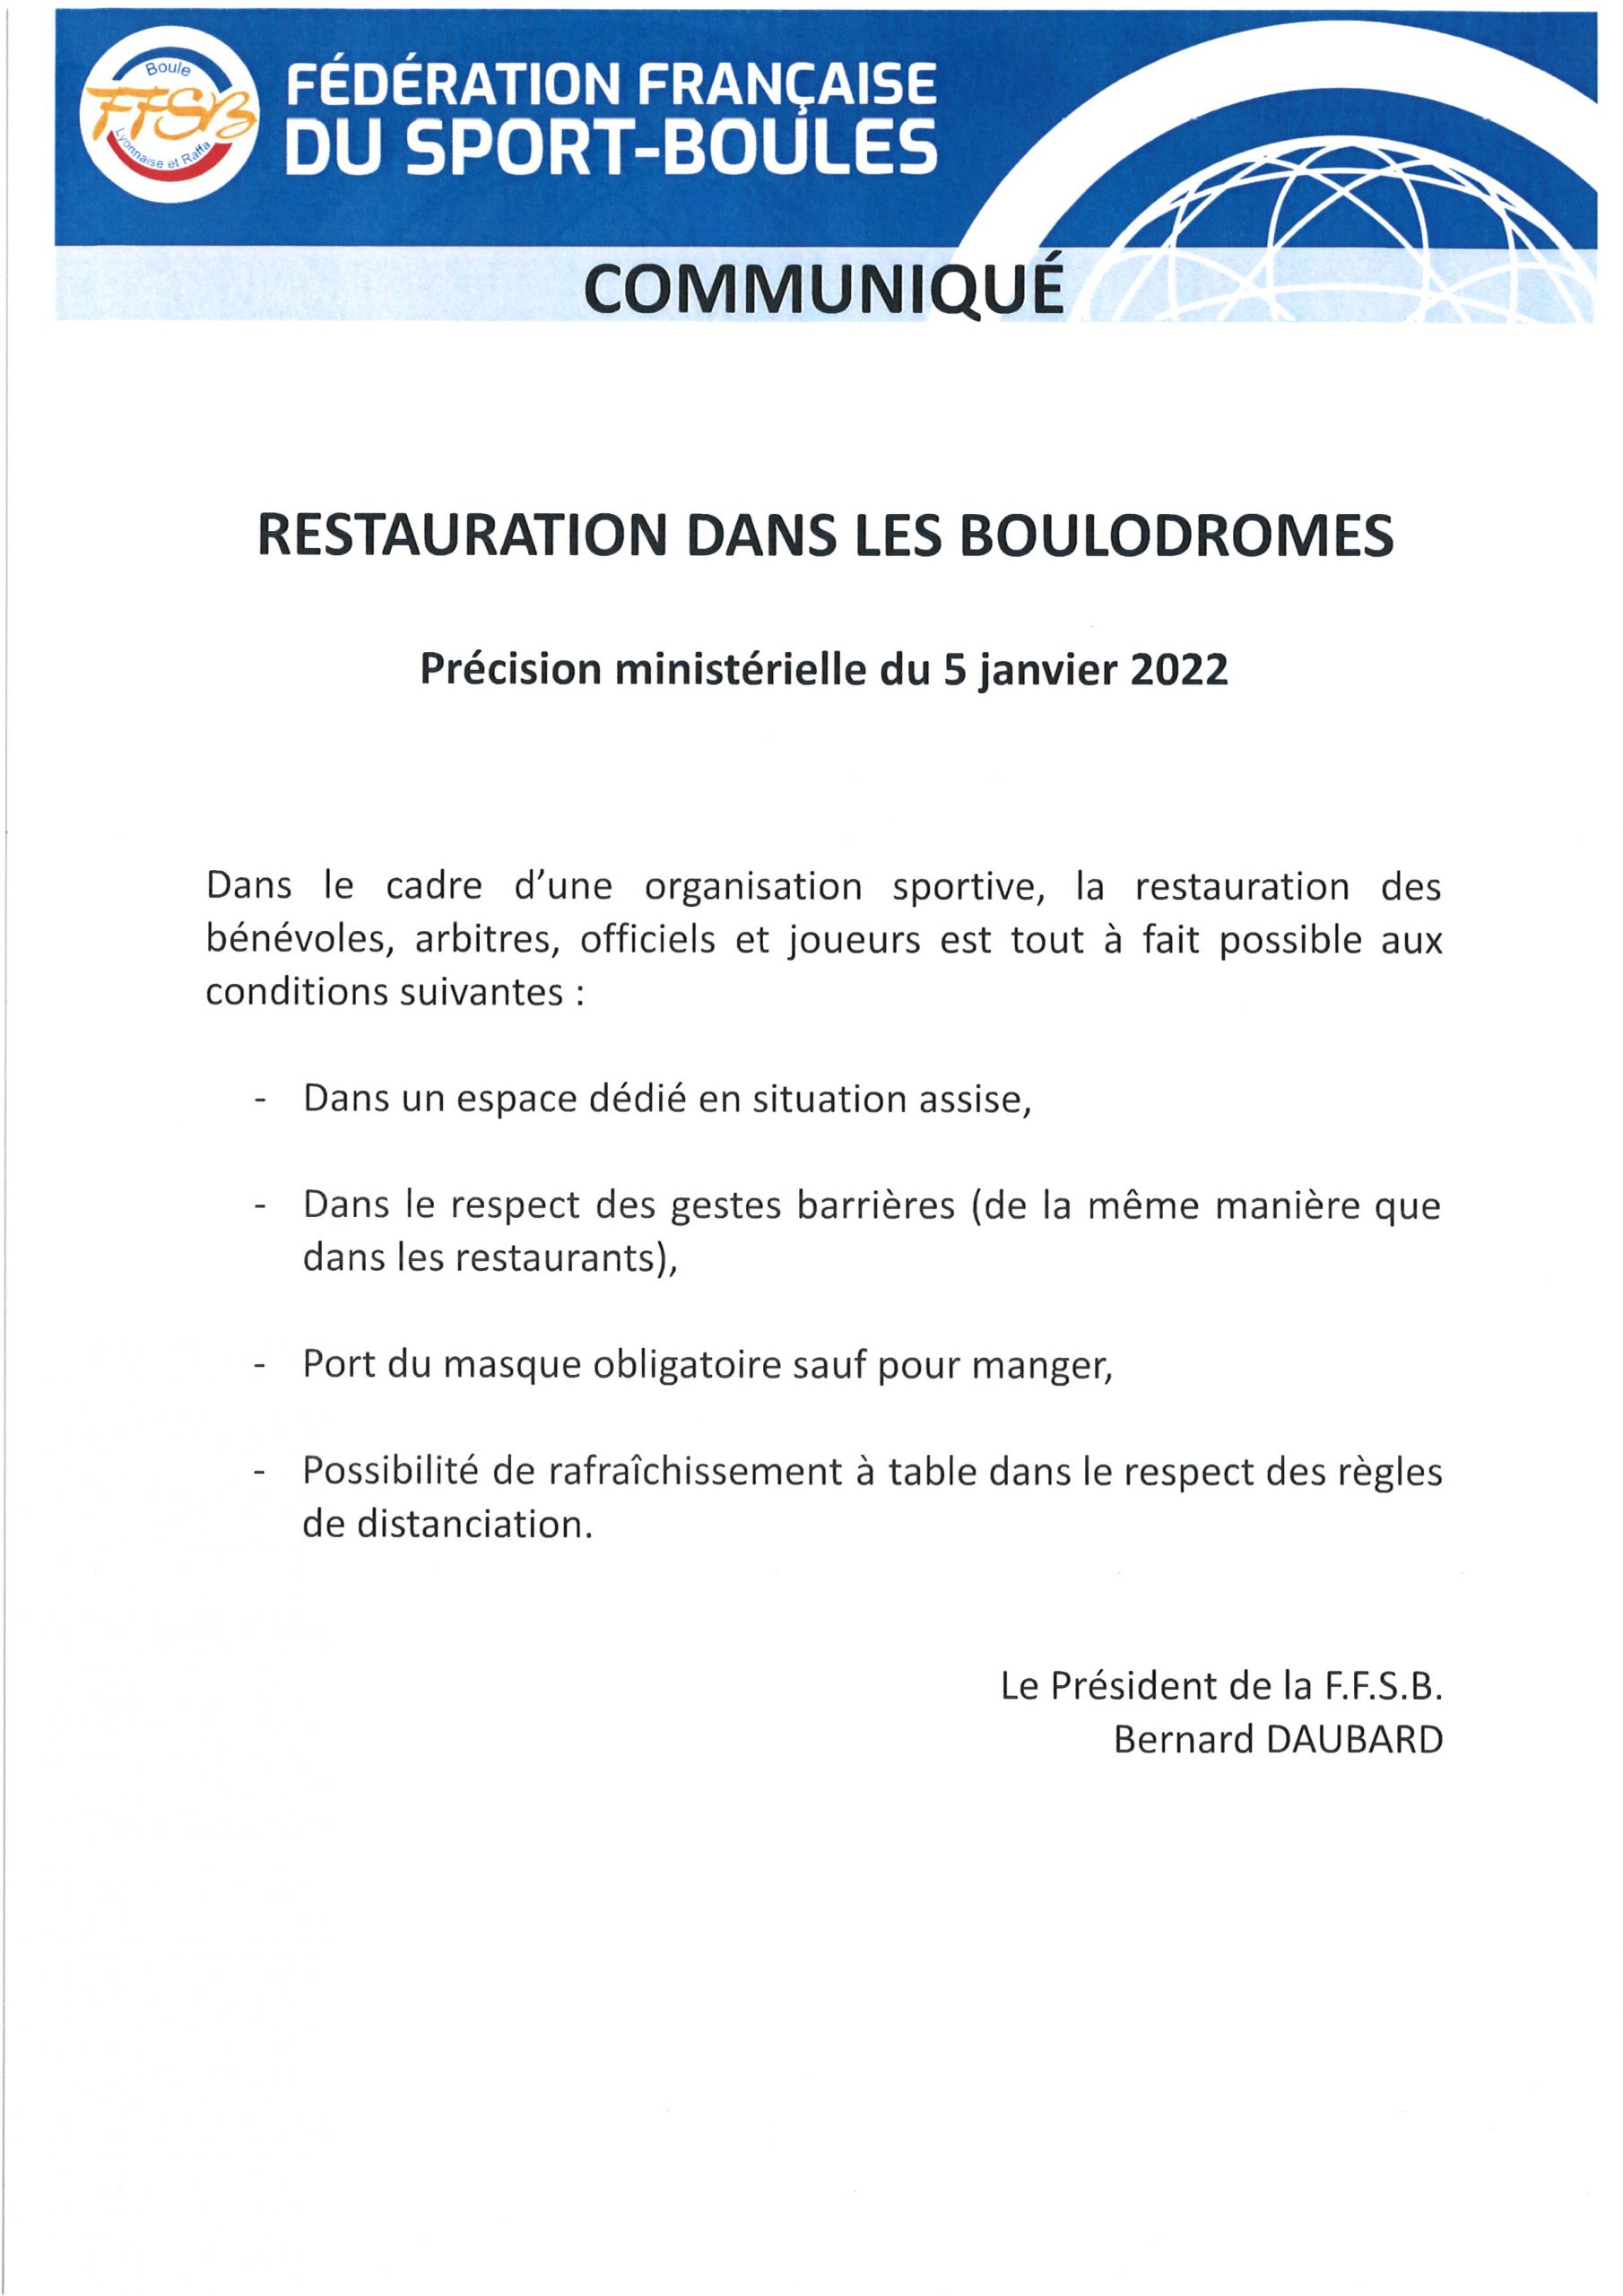 Précision ministérielle du 5 janvier 2022 quant à la restauration dans les boulodromes